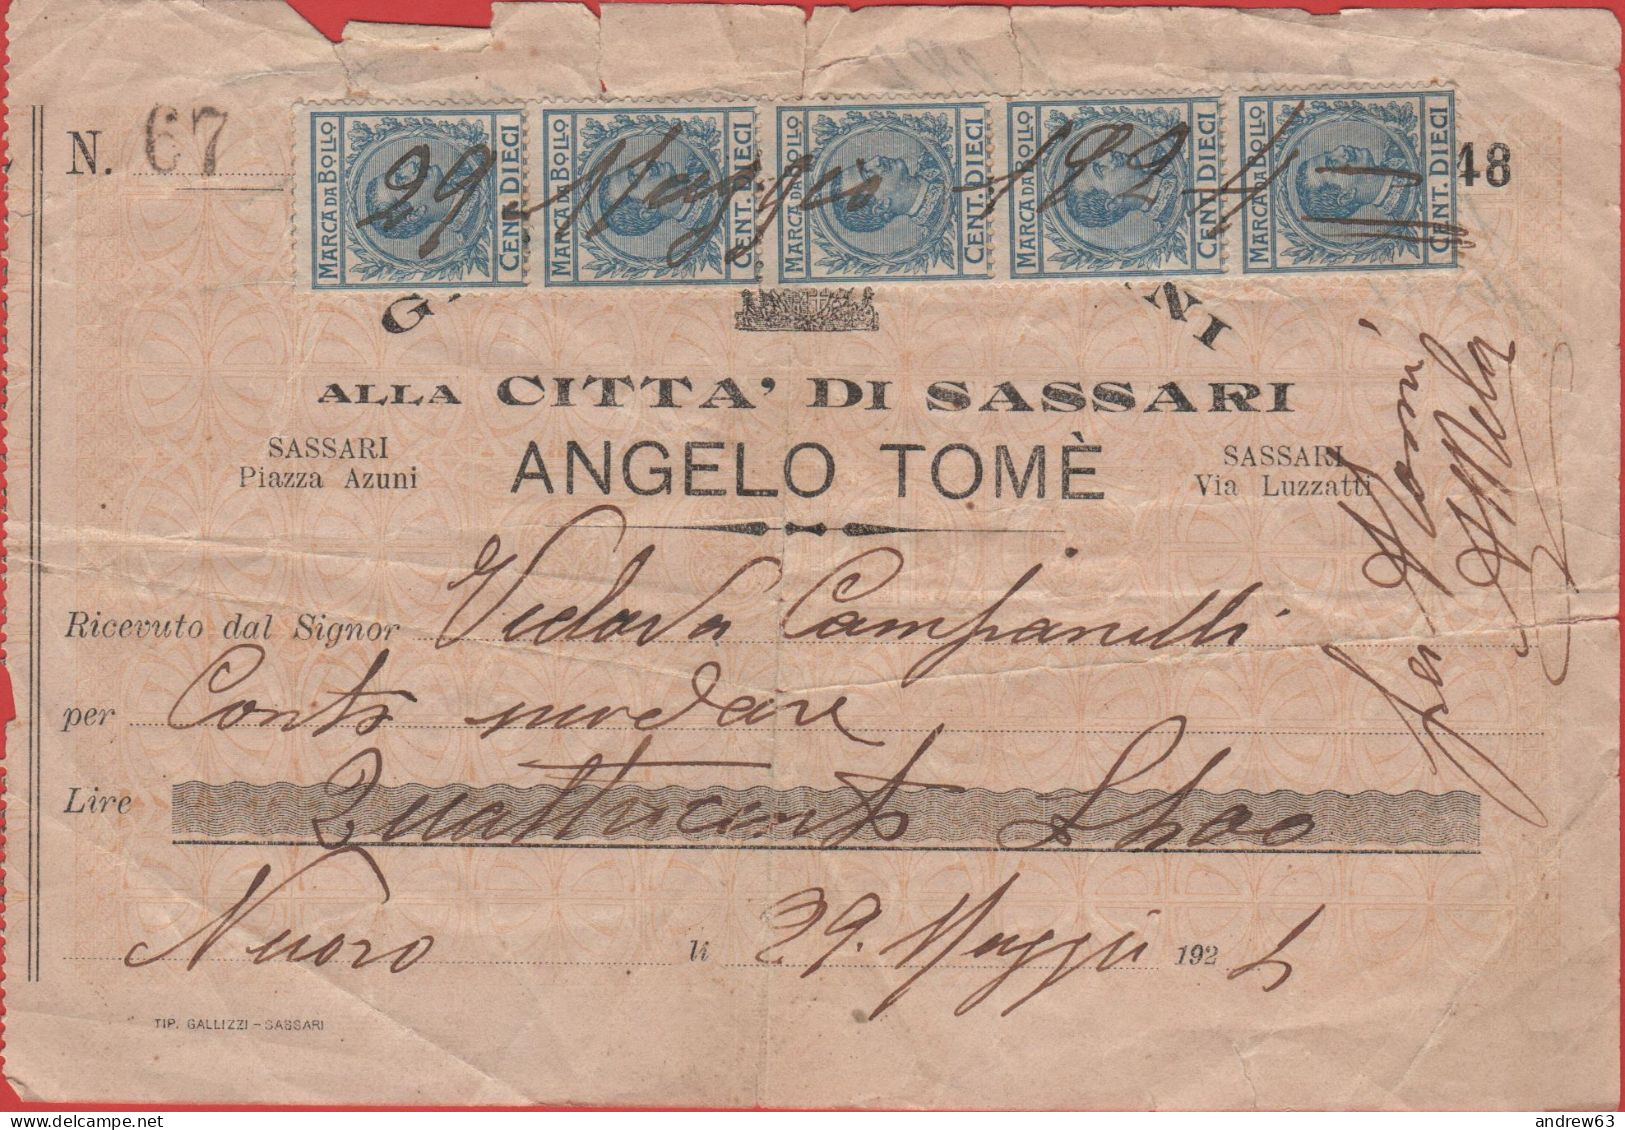 ITALIA - 1924 - Ricevuta Con 5 Marche Da Bollo Da 10c - Angelo Tomè - Sassari - Italy